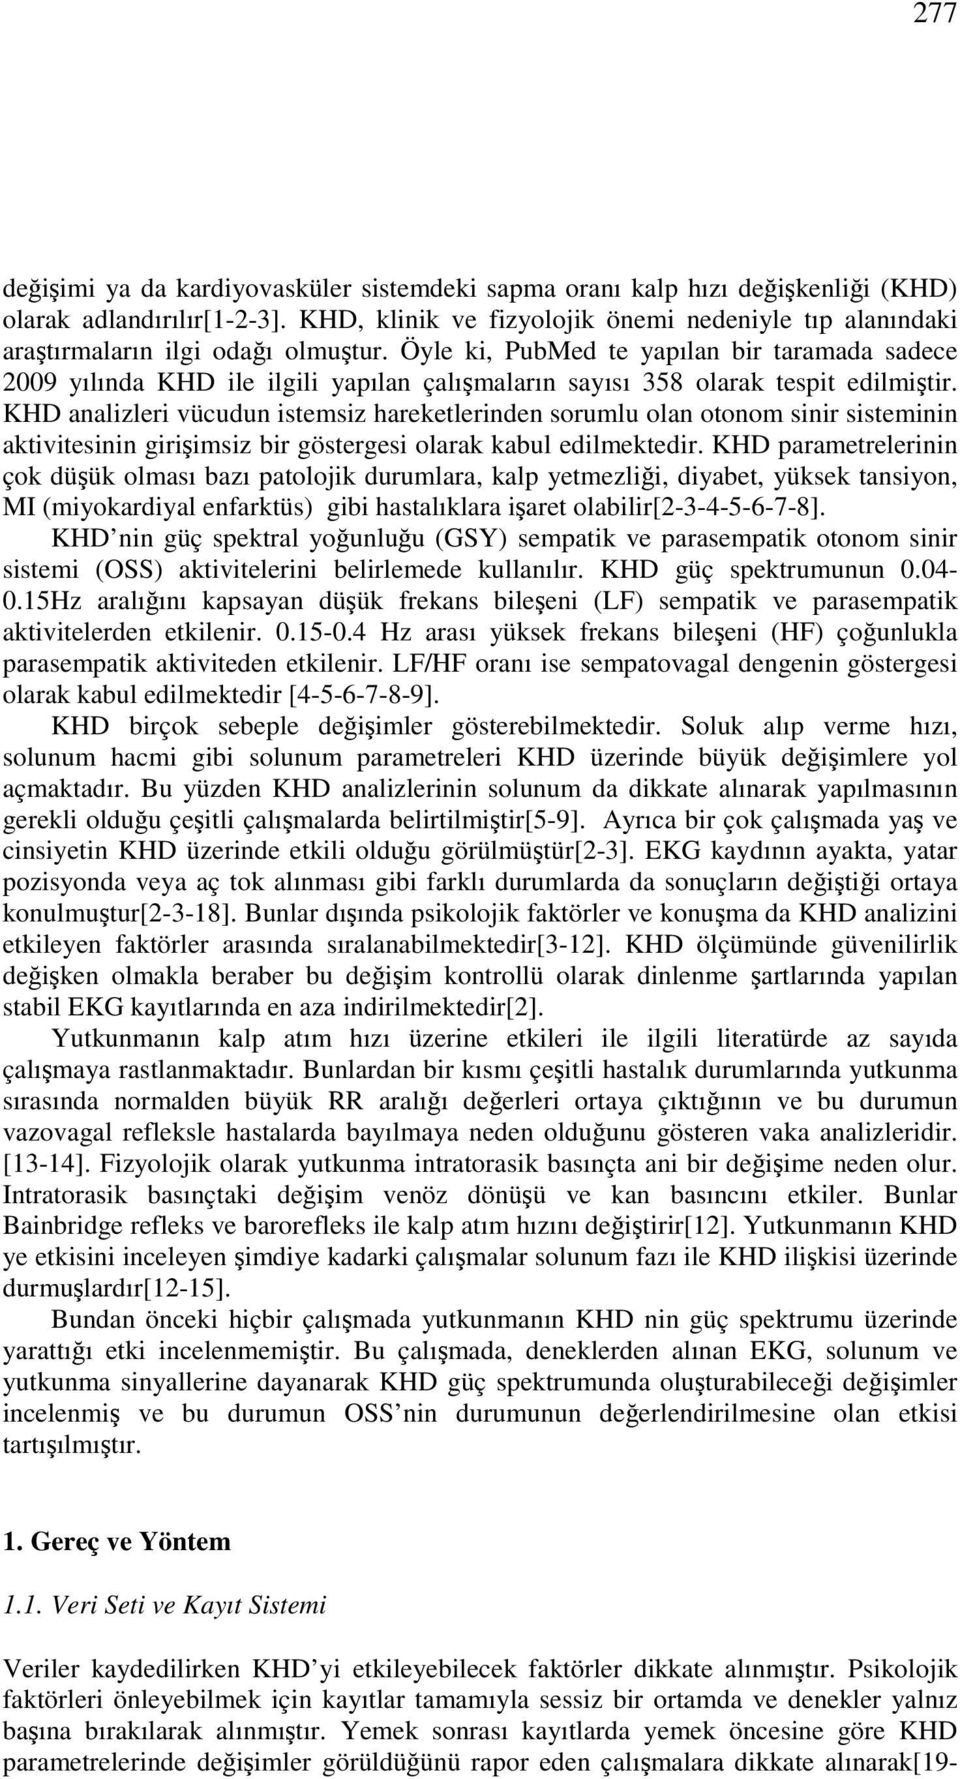 Öyle ki, PubMed te yapılan bir taramada sadece 29 yılında KHD ile ilgili yapılan çalışmaların sayısı 358 olarak tespit edilmiştir.